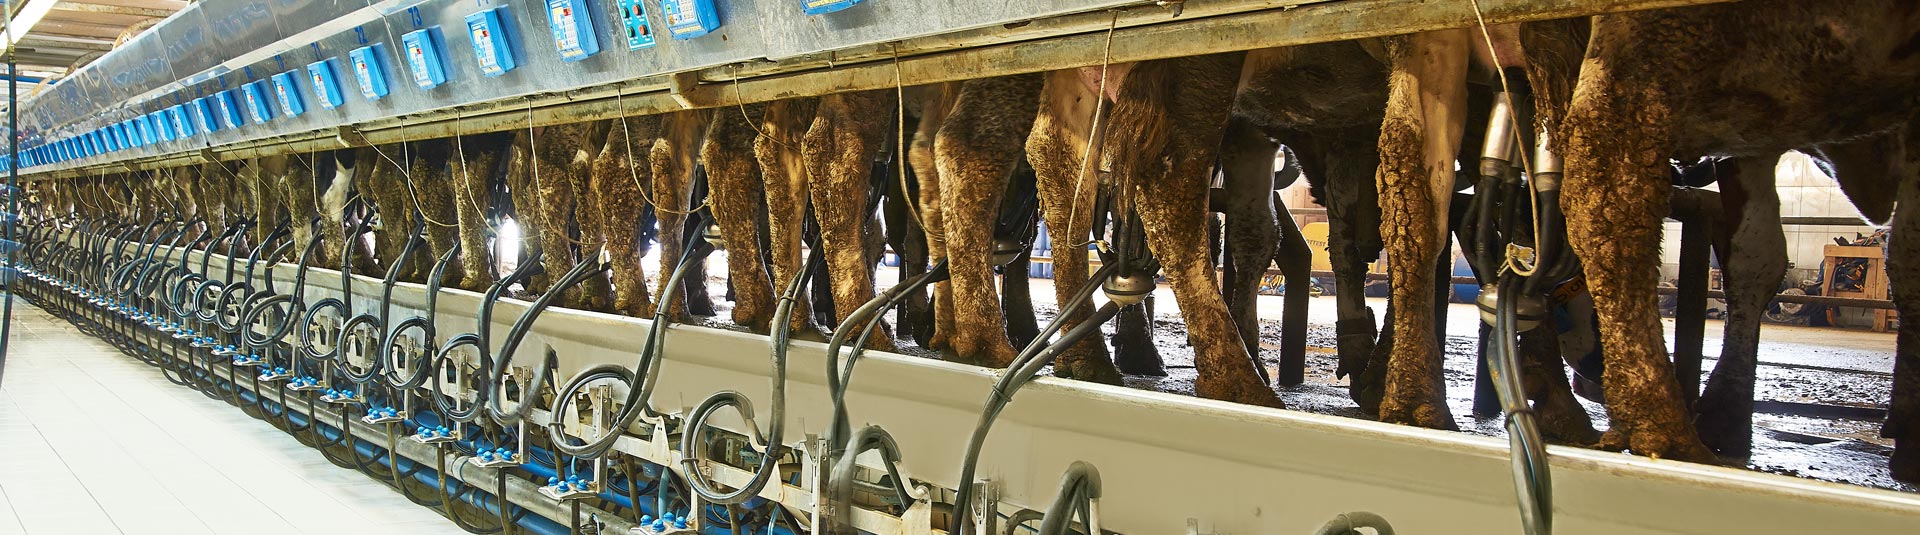 Seydişehir - Gevrekli Süt Üretim Çiftliği